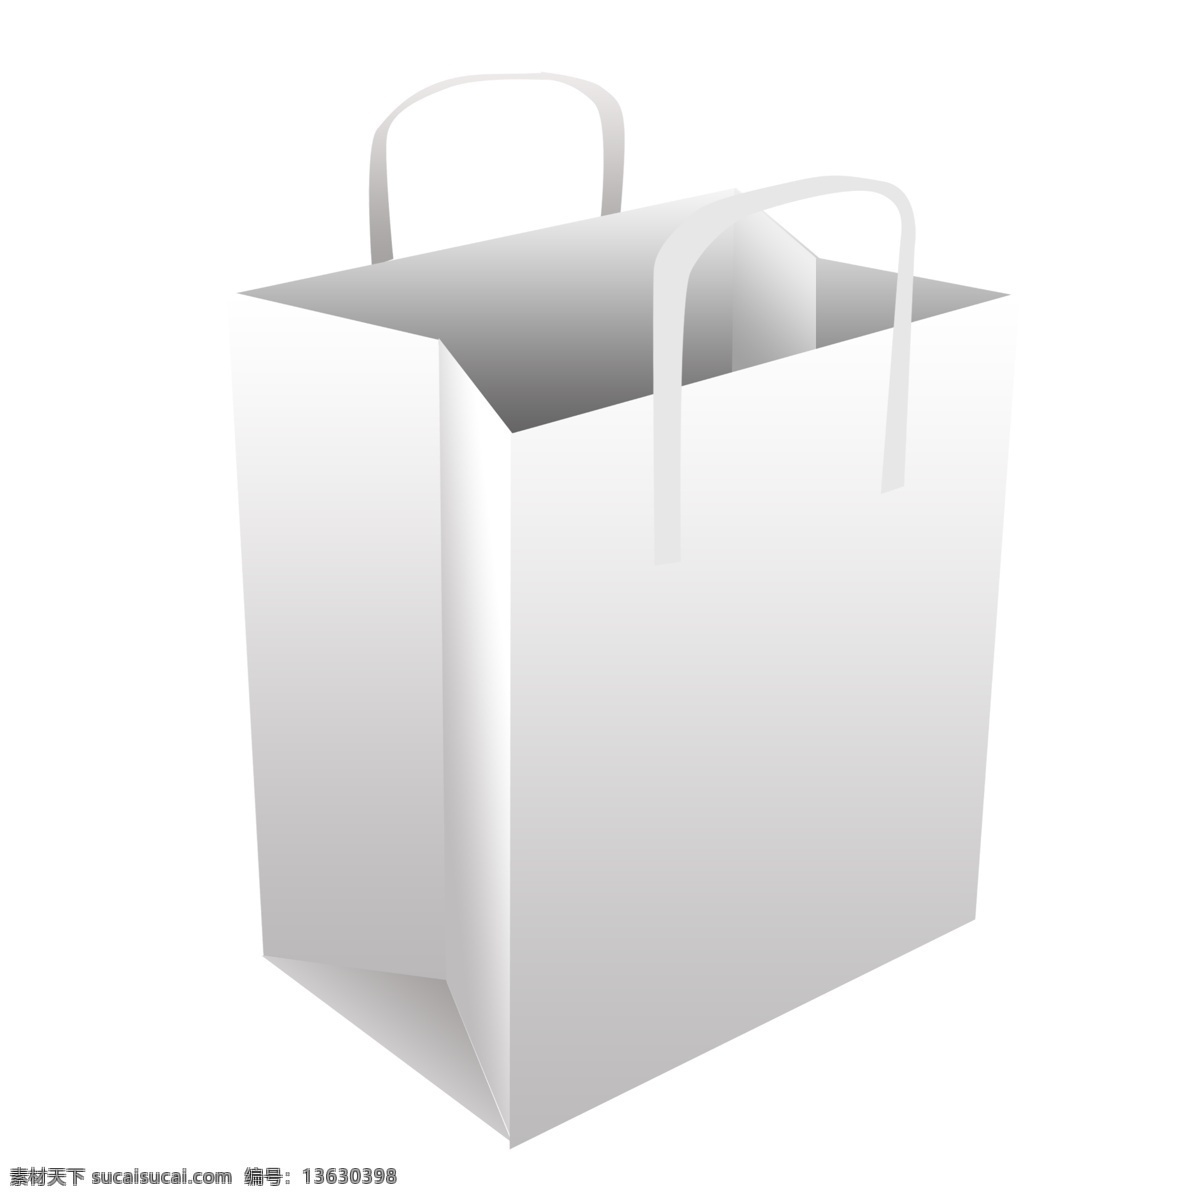 白色 贴图 手提 包装袋 白色包装袋 手提包装袋 环保包装袋 包装袋模型 立体袋子 简约袋子 纸质包装设计